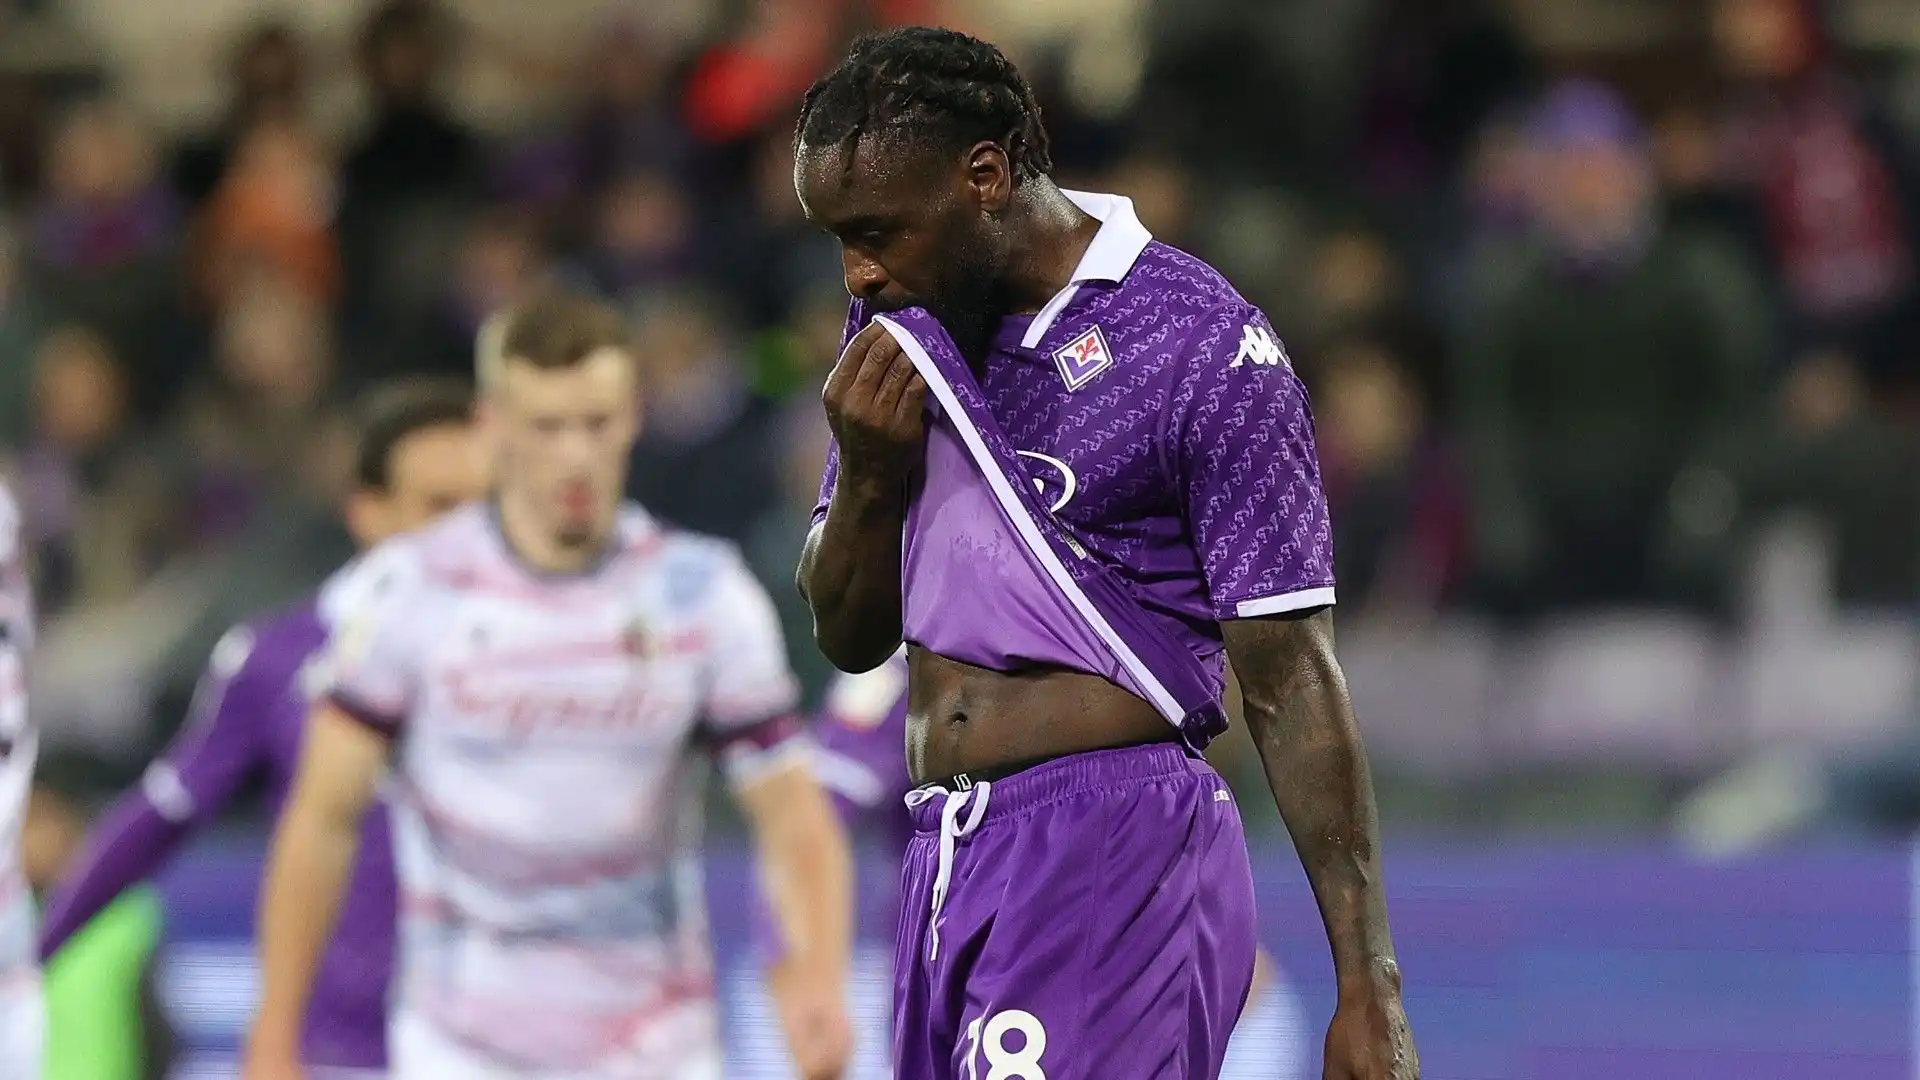 Ad agosto la Fiorentina ha sborsato 13 milioni di euro per acquistarlo